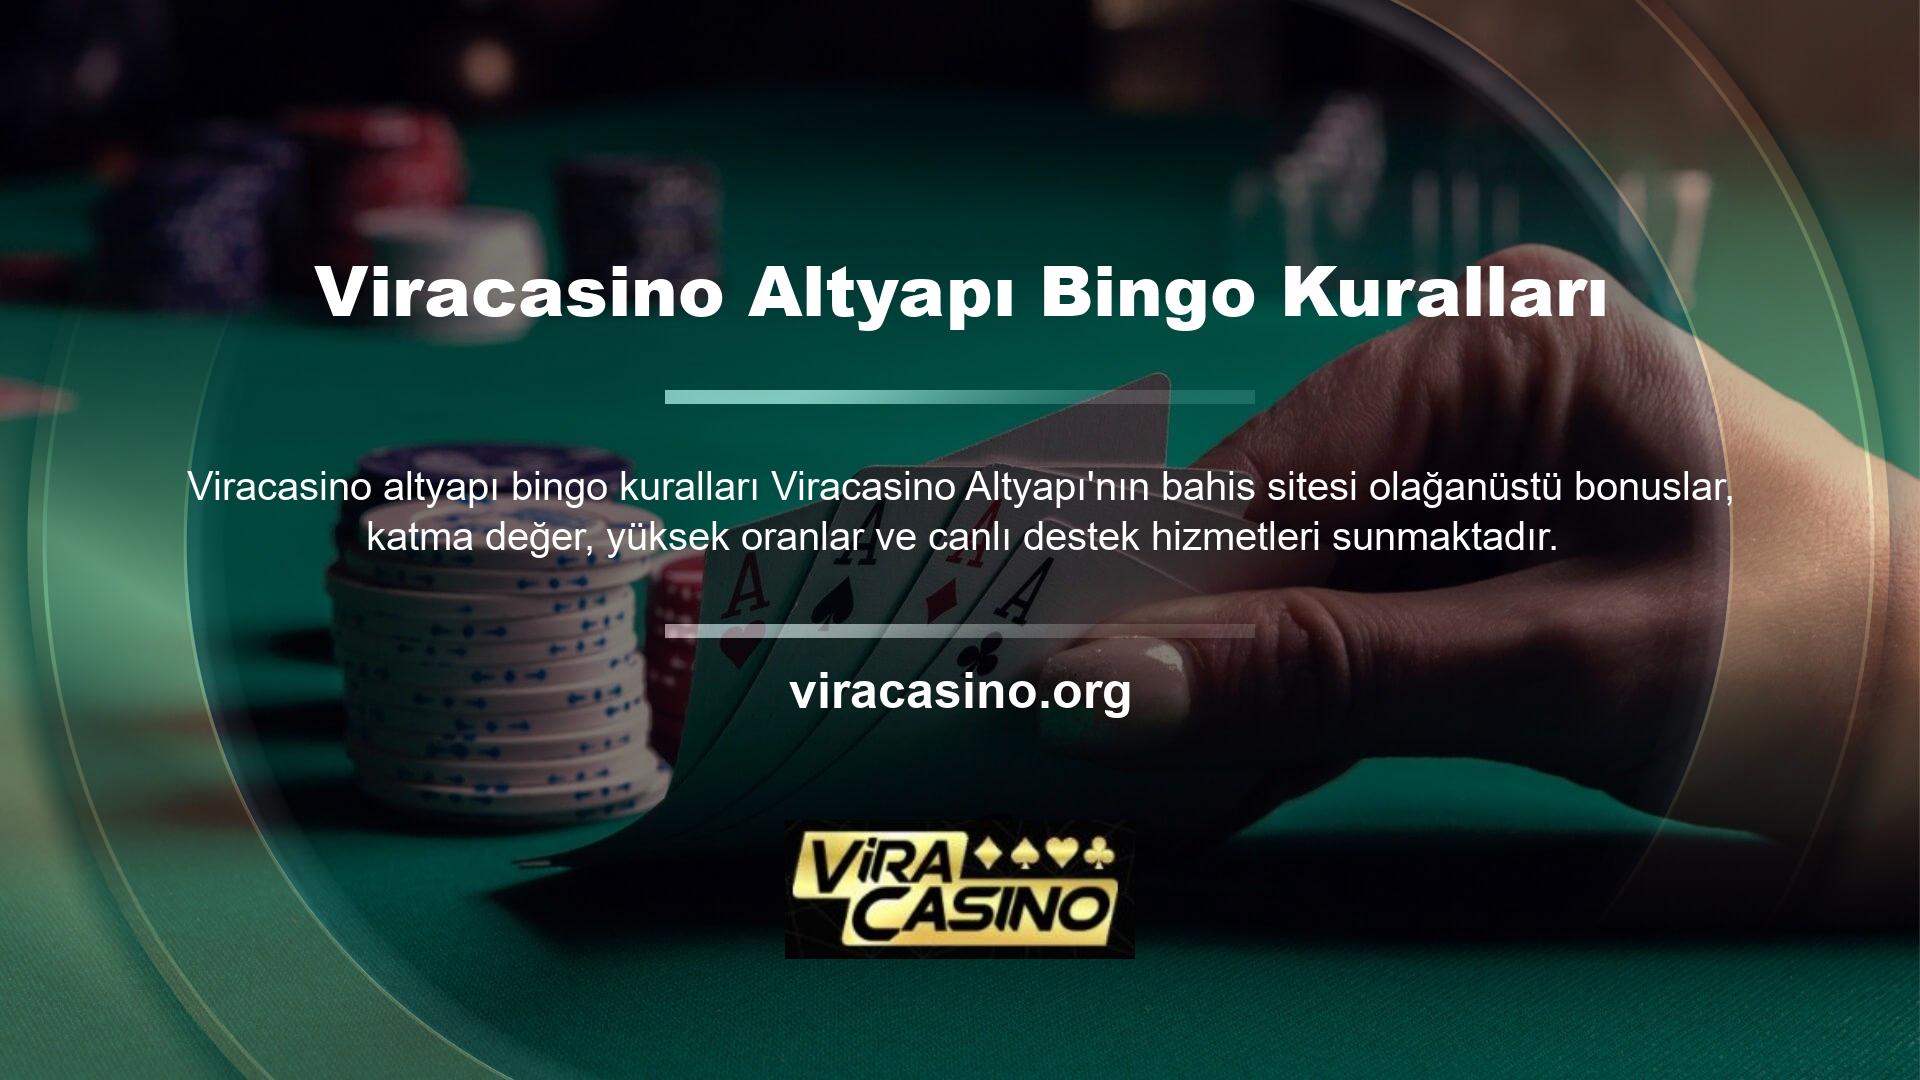 Bu neden? Viracasino Casino'nun kapsamlı bilgileri, sitede hesap açmak, para yatırmak ve oyun oynamak isteyen herkes için çok önemlidir